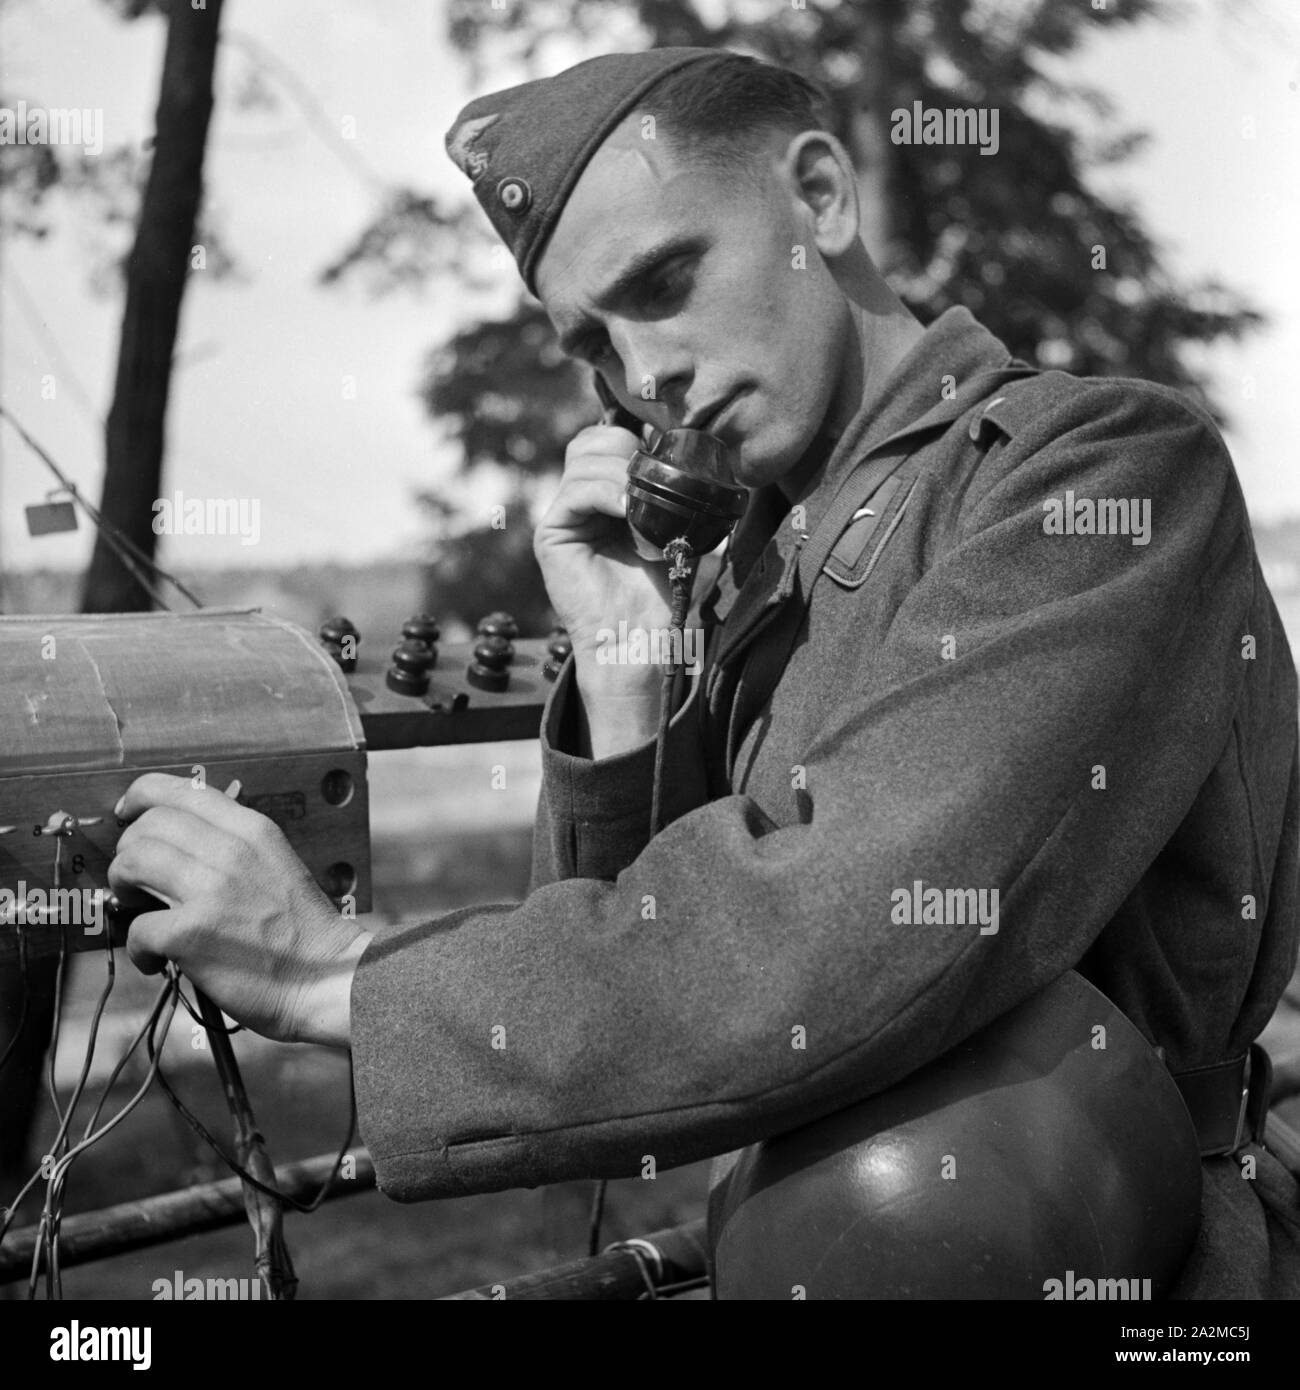 Original-Bildunterschrift: Soldat eines Fernsprechtrupps bei der Arbeit, Deutschland 1940er Jahre. Soldier of a telephone group at work, Germany 1940s. Stock Photo